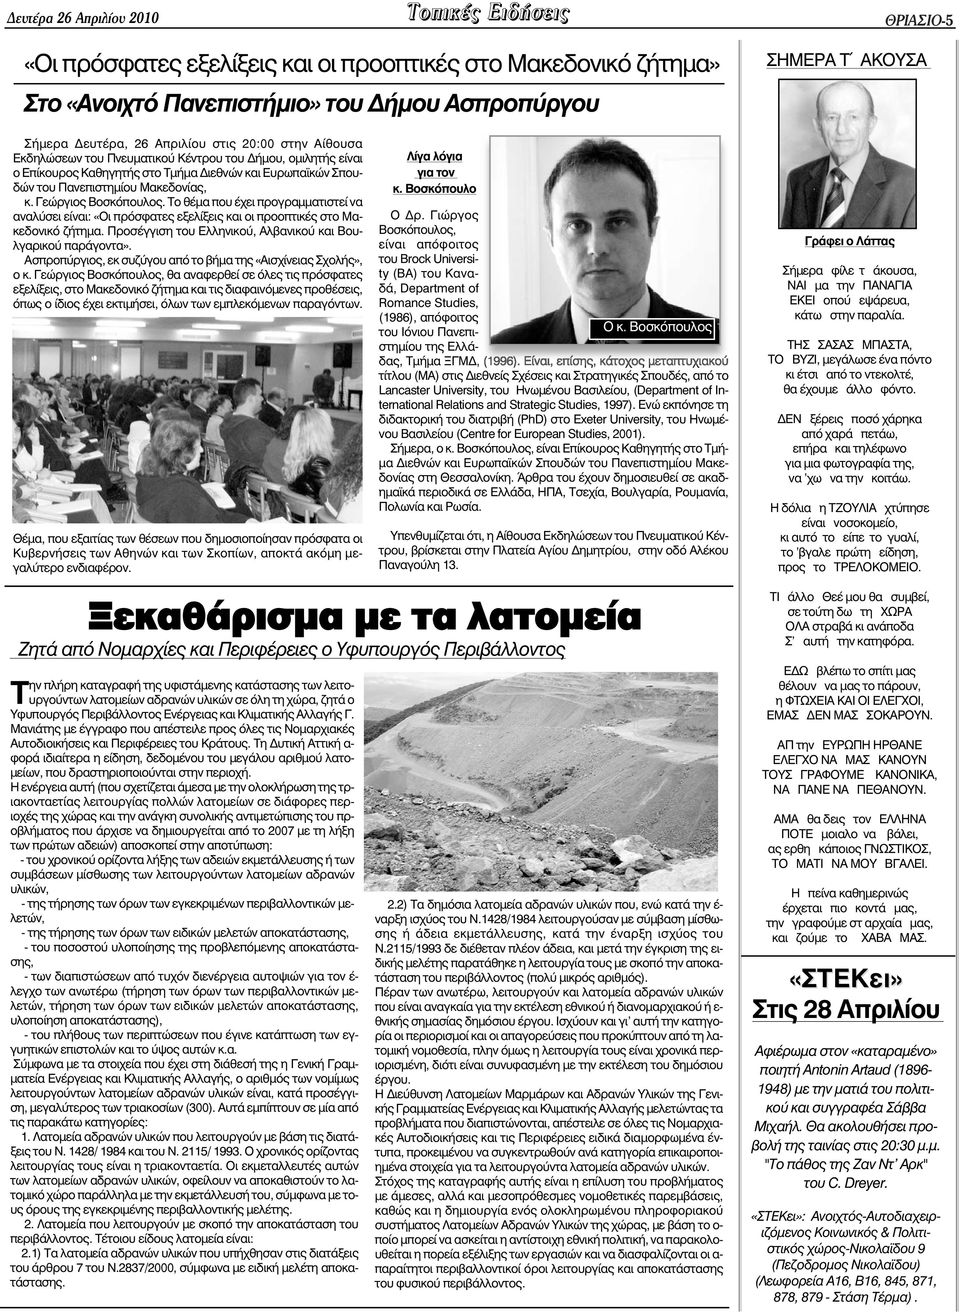 Το θέµα που έχει προγραµµατιστεί να αναλύσει είναι: «Οι πρόσφατες εξελίξεις και οι προοπτικές στο Μακεδονικό ζήτηµα. Προσέγγιση του Ελληνικού, Αλβανικού και Βουλγαρικού παράγοντα».